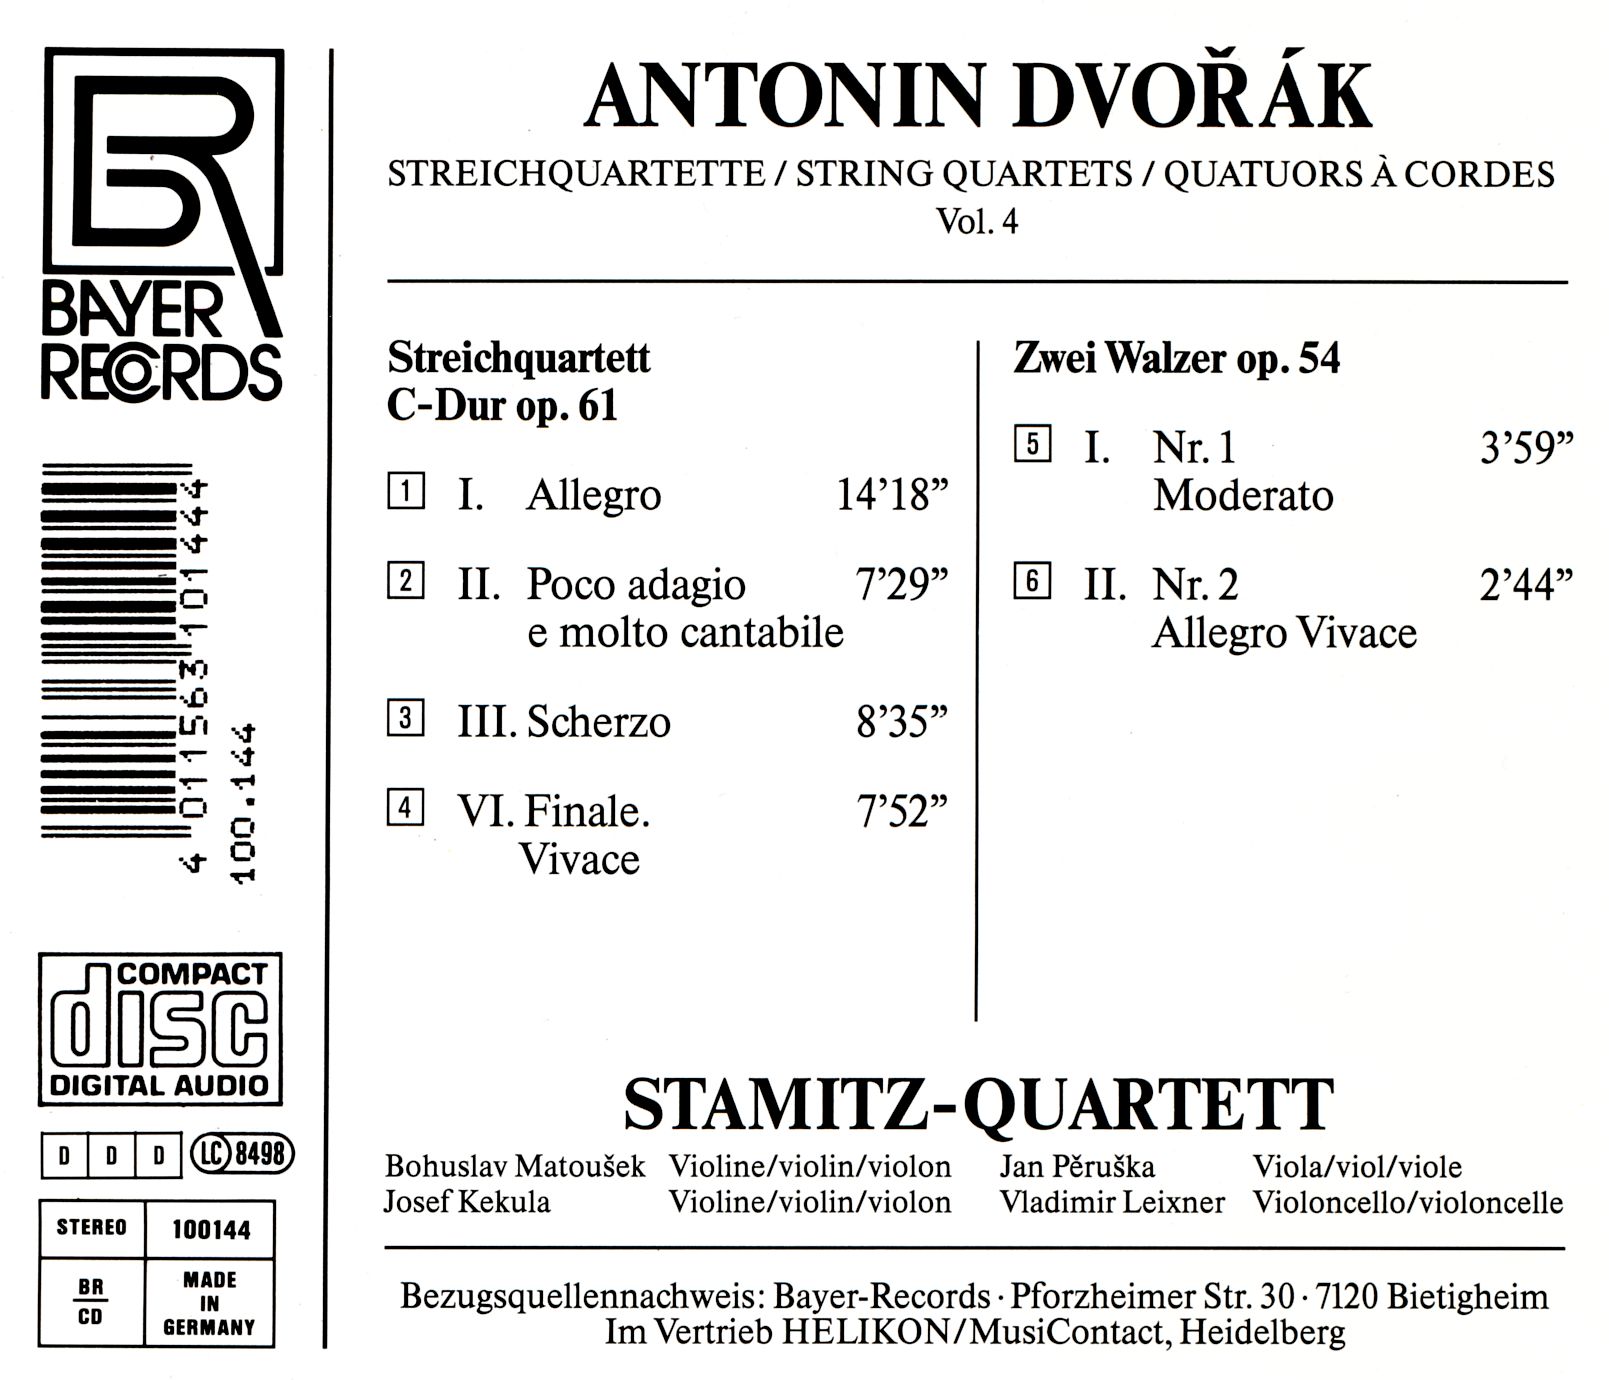 Antonin Dvorak - Streichquartette Vol.4